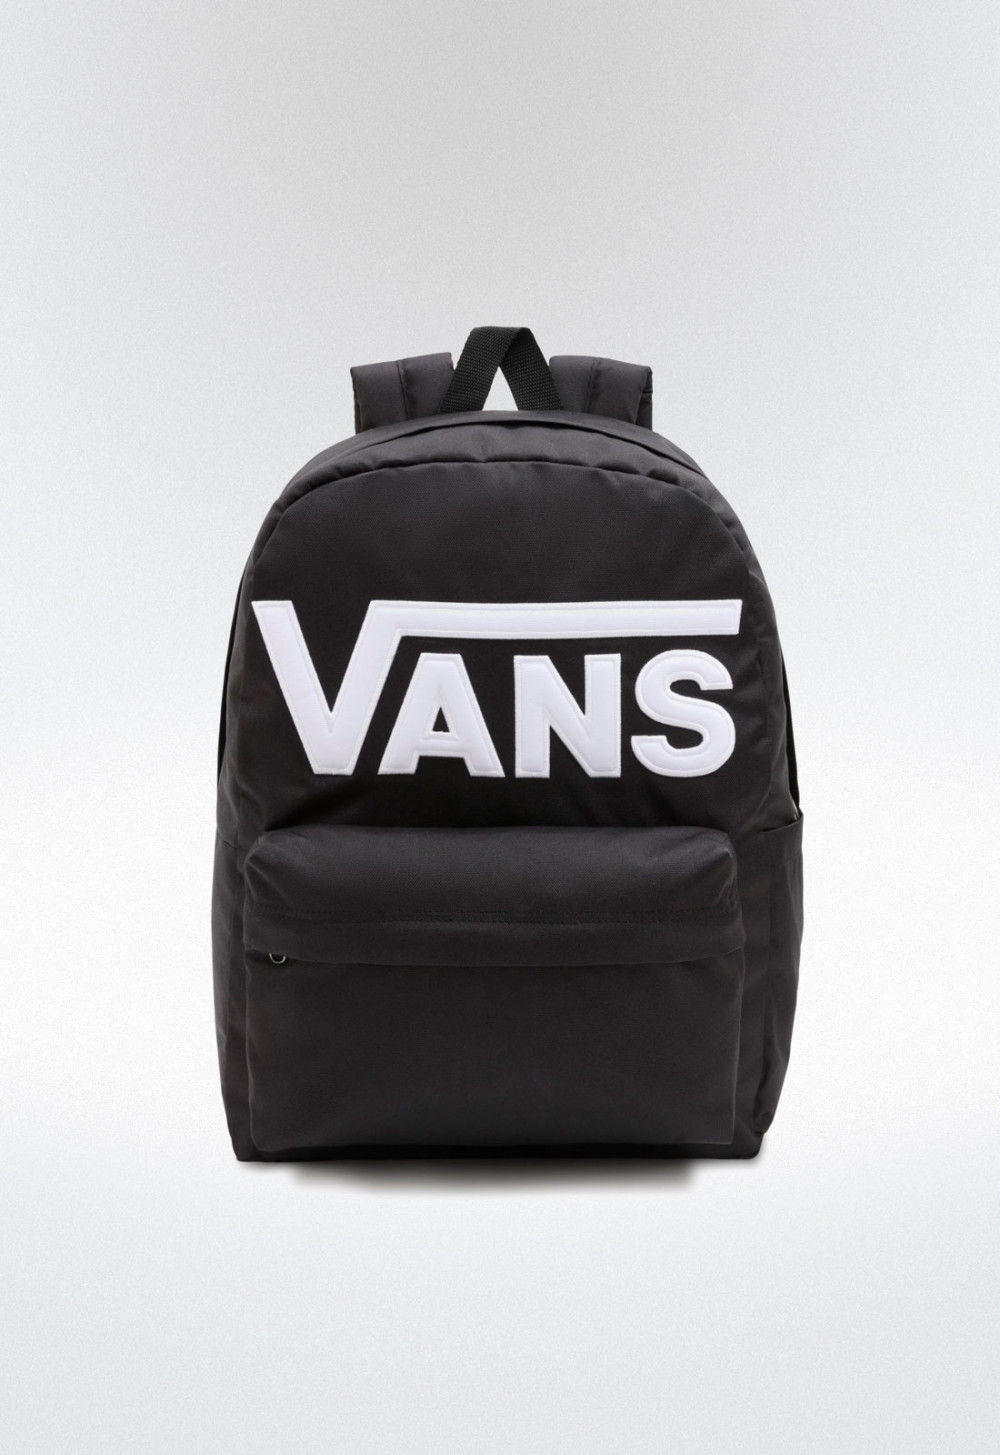 https://www.zapatosvas.com/49429-superlarge_default/bolso-de-bolso-negro-vans-mn-old-skool-drop-v-backpack-black-white-83603.jpg